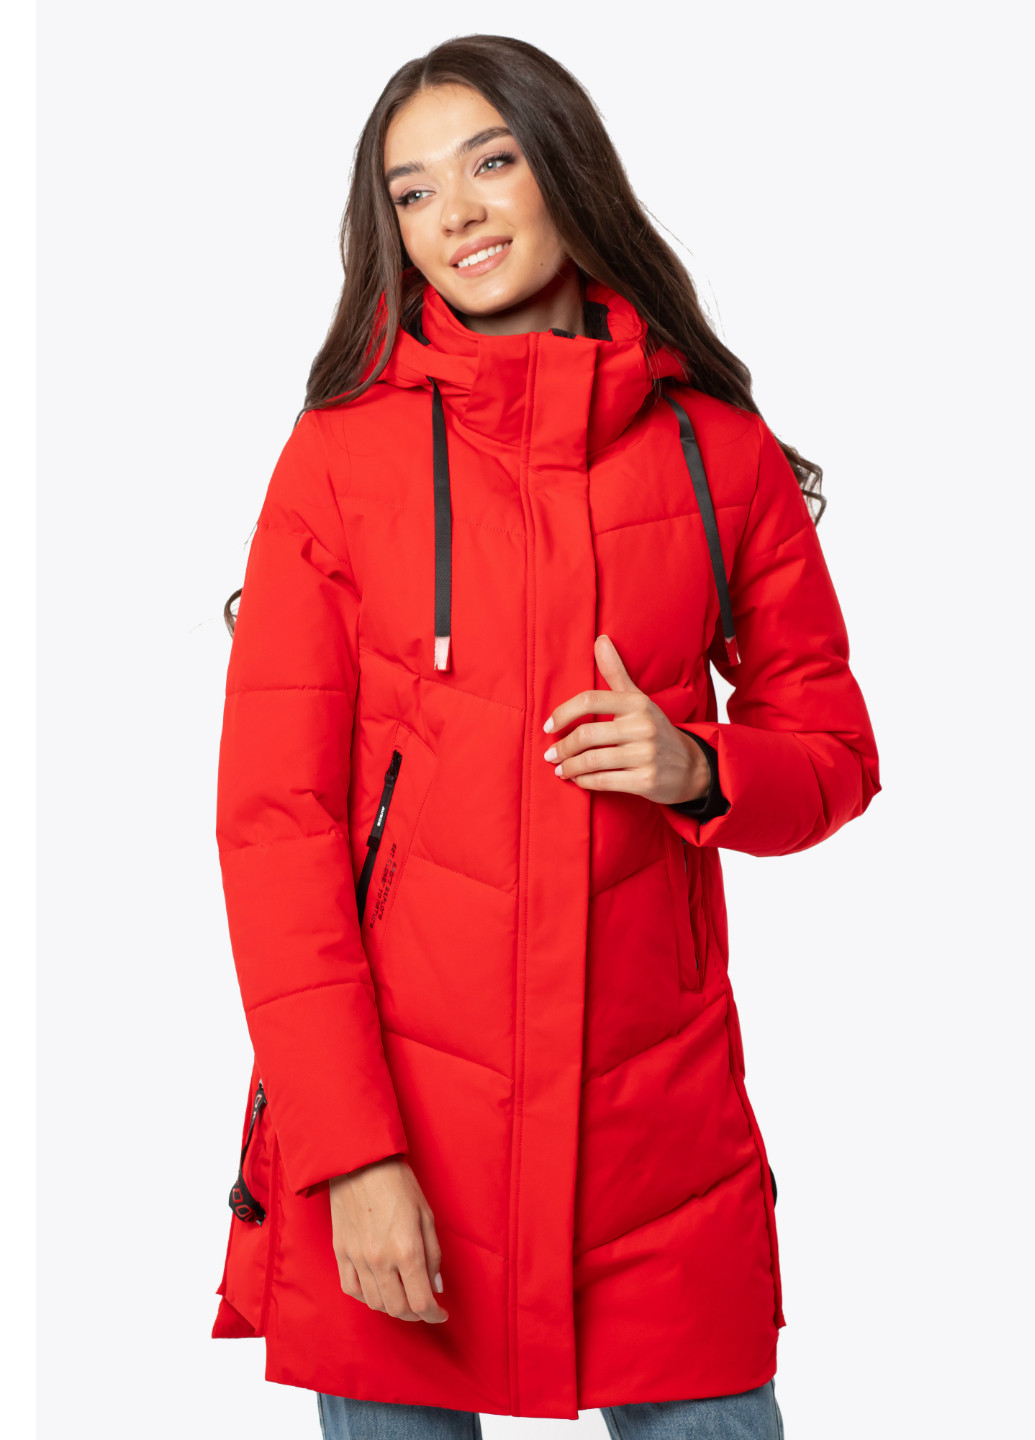 Червона зимня жіноча зимова куртка Avecs